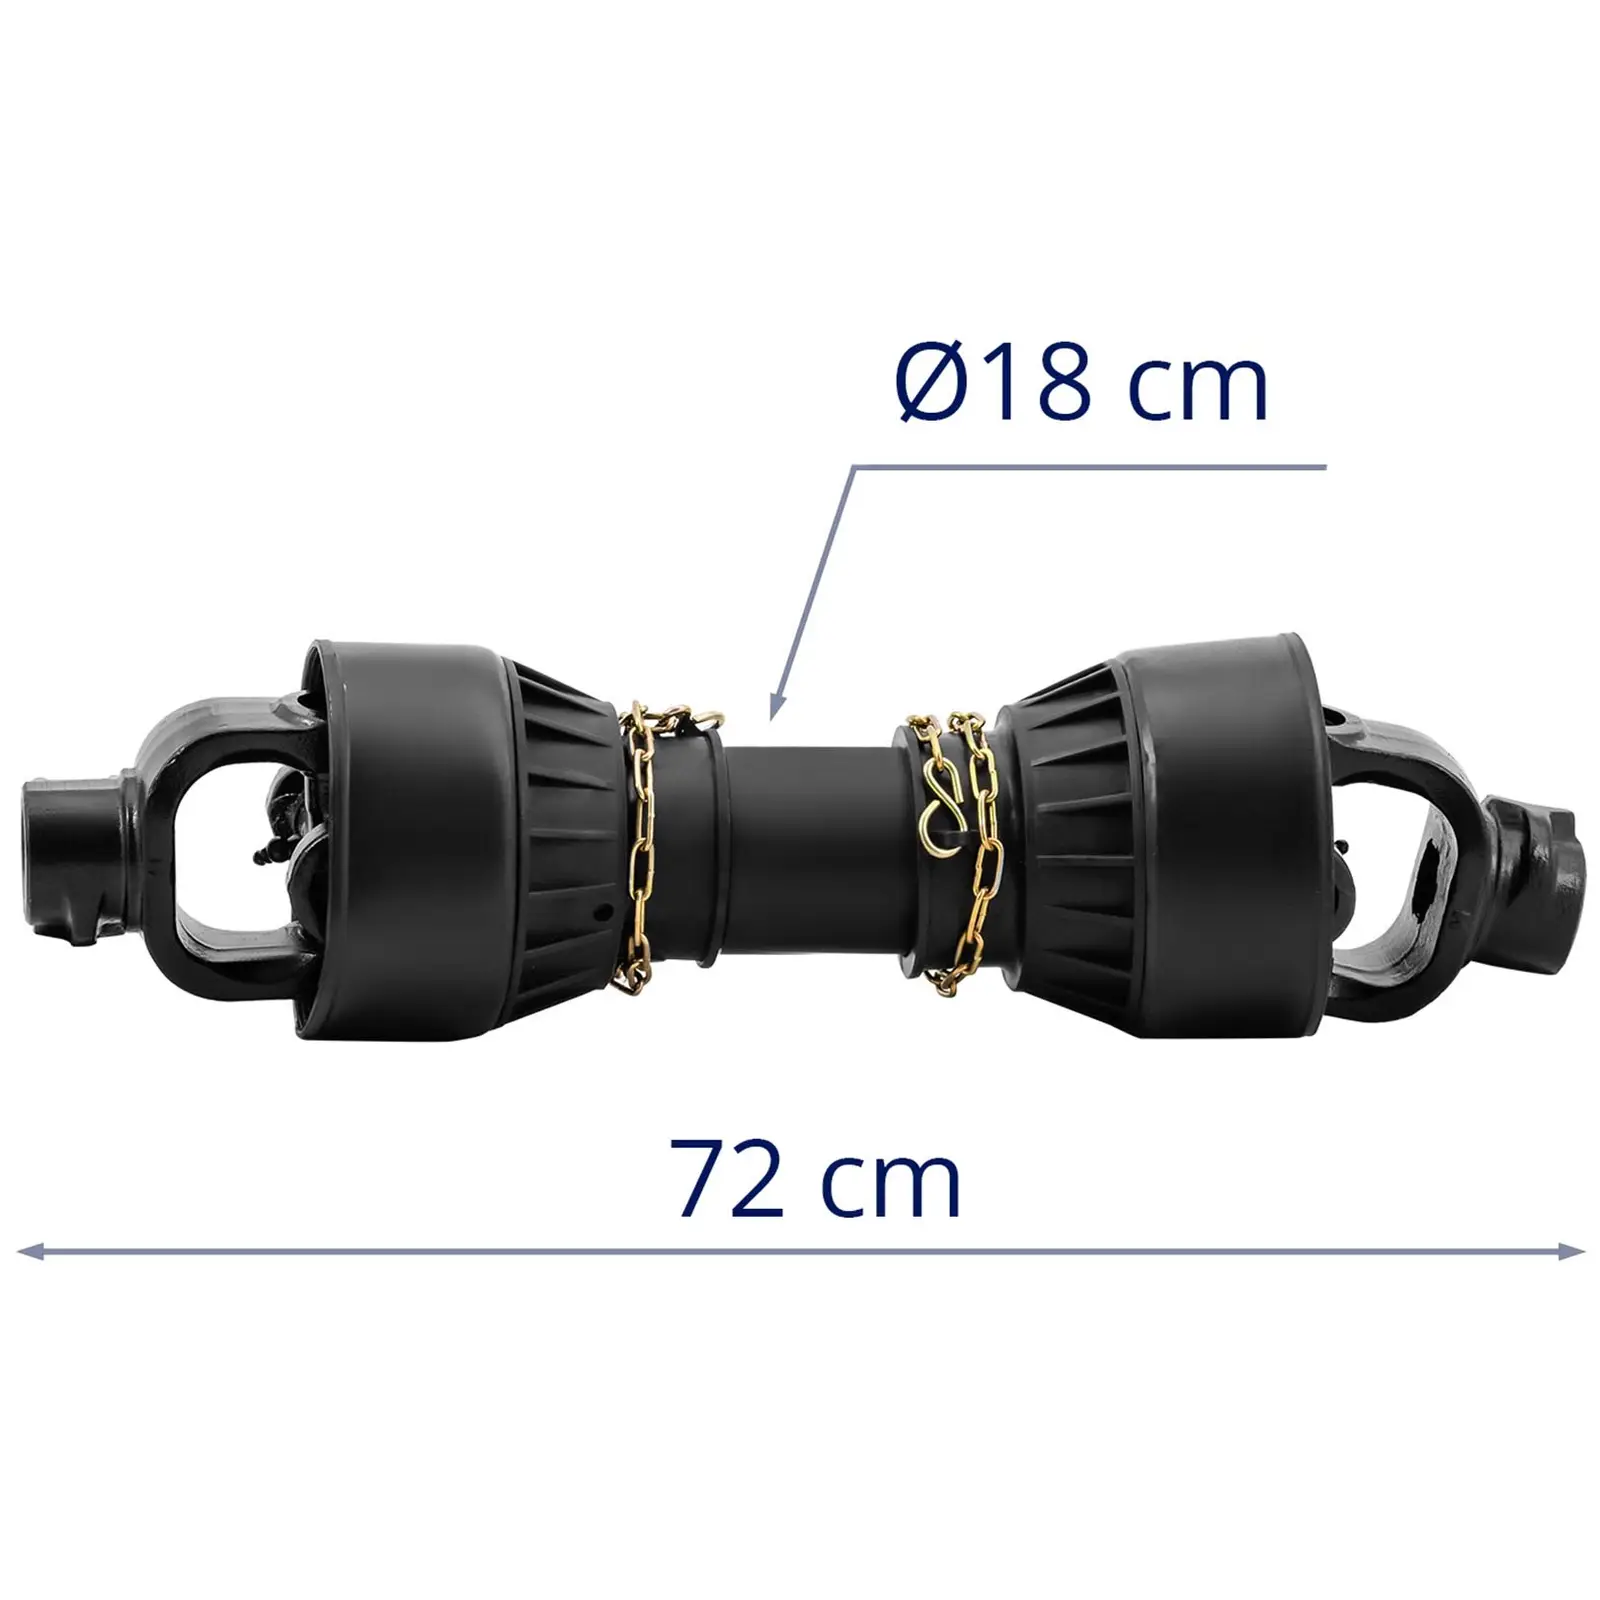 Arbre de transmission avec compensation de longueur - 62 - 72 cm - 1 3/8 pouce / 6 cannelures